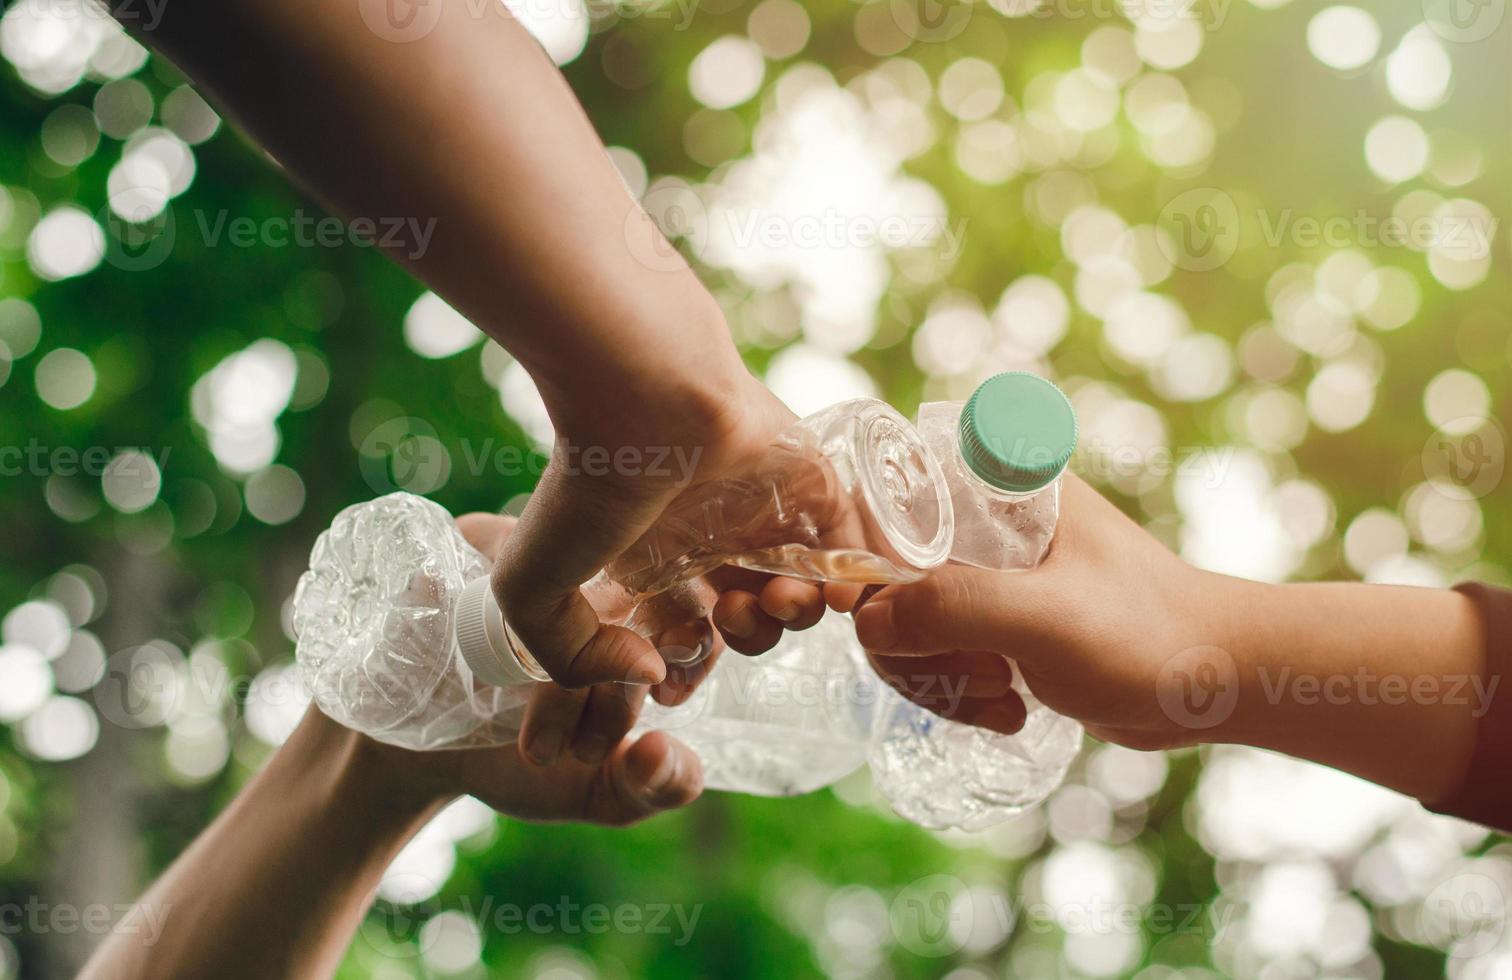 rimuovere i rifiuti per conservare un mondo migliore con un buon ambiente e un'atmosfera naturale mano nella mano come una squadra, unità, tenendo insieme le bottiglie di plastica. ridurre il riscaldamento globale salvare il mondo foto